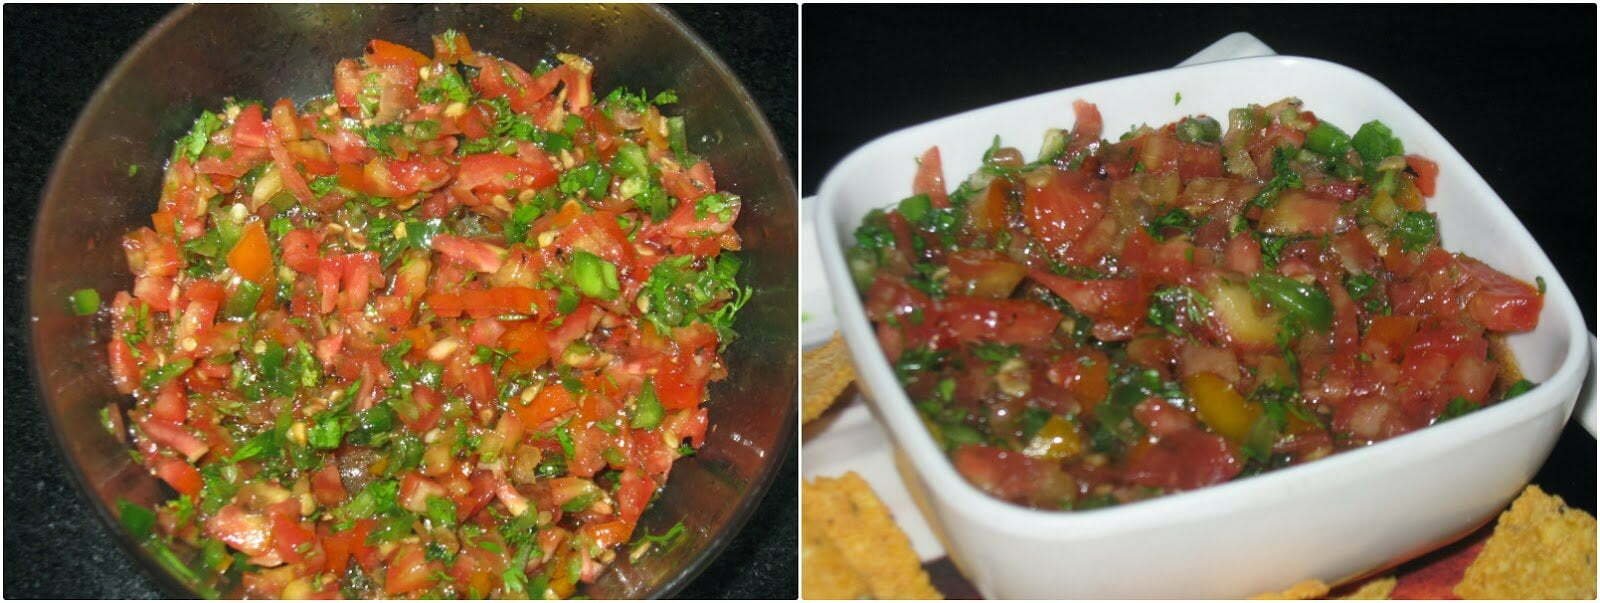 Spicy Tomato Salsa